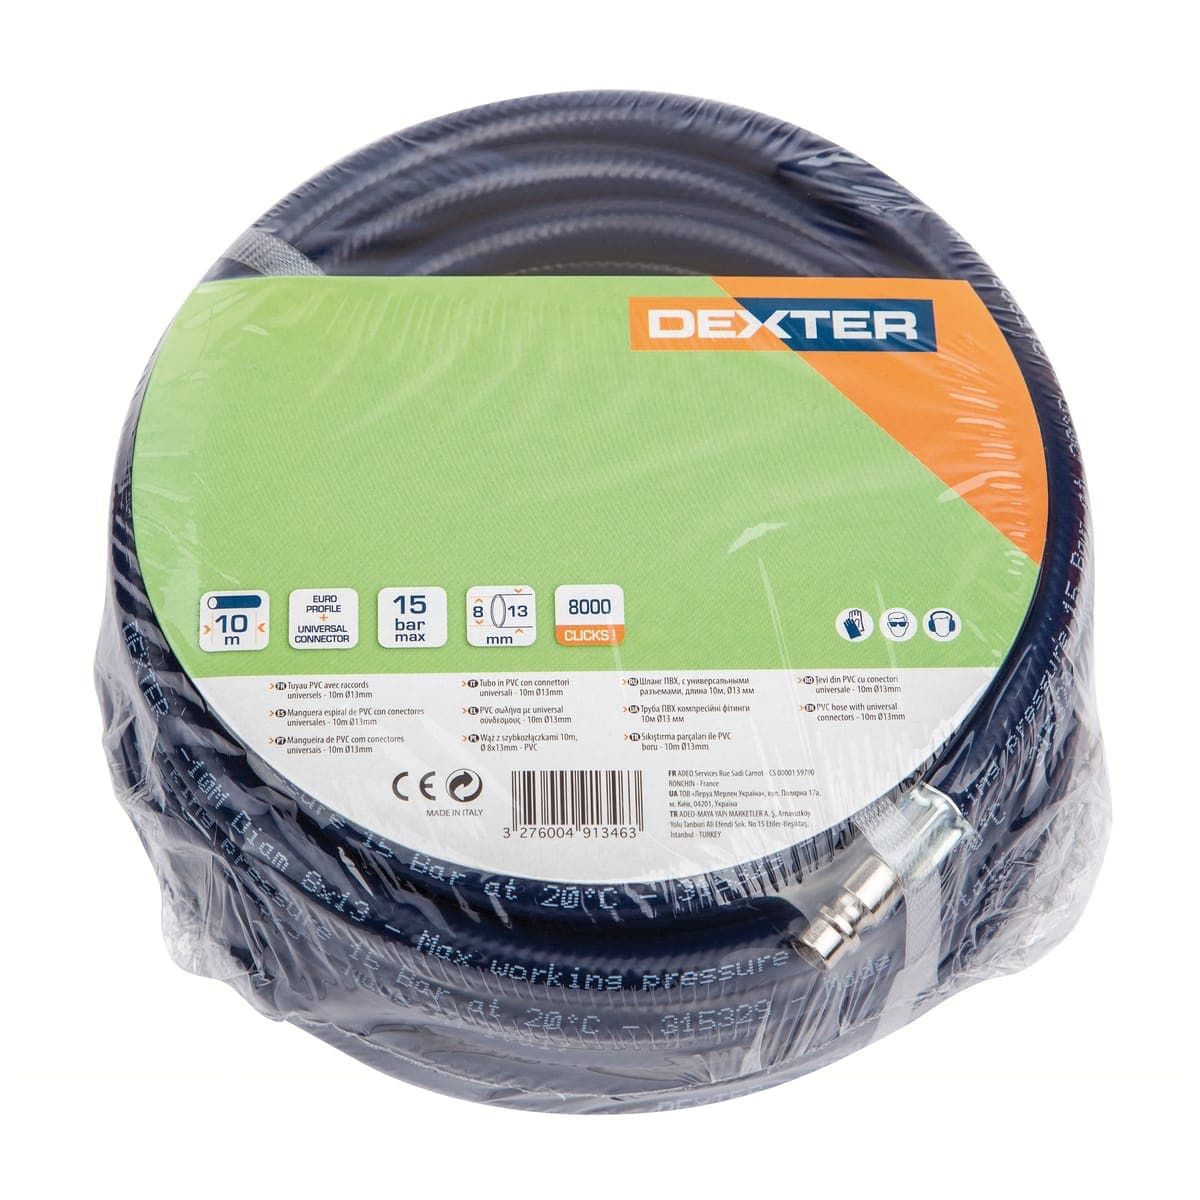 DEXTER - Tuyau d'air flexible en PVC pour compresseur - Ø 8x13 mm - 15 bar  - L. 15m